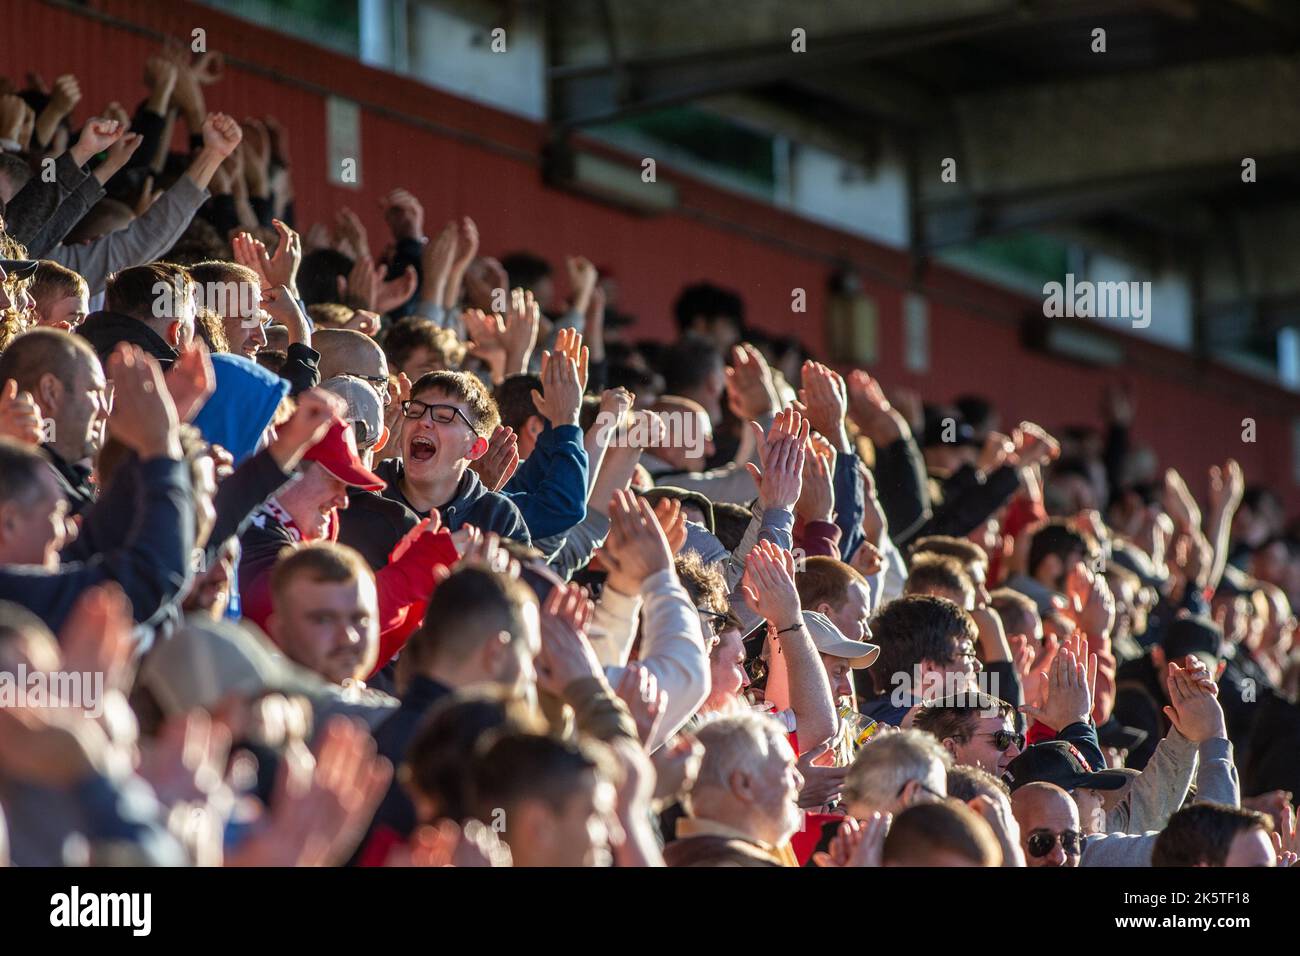 Les fans de football / football et les spectateurs sur la terrasse au stade applaudissent et applaudissent pendant le match. Banque D'Images